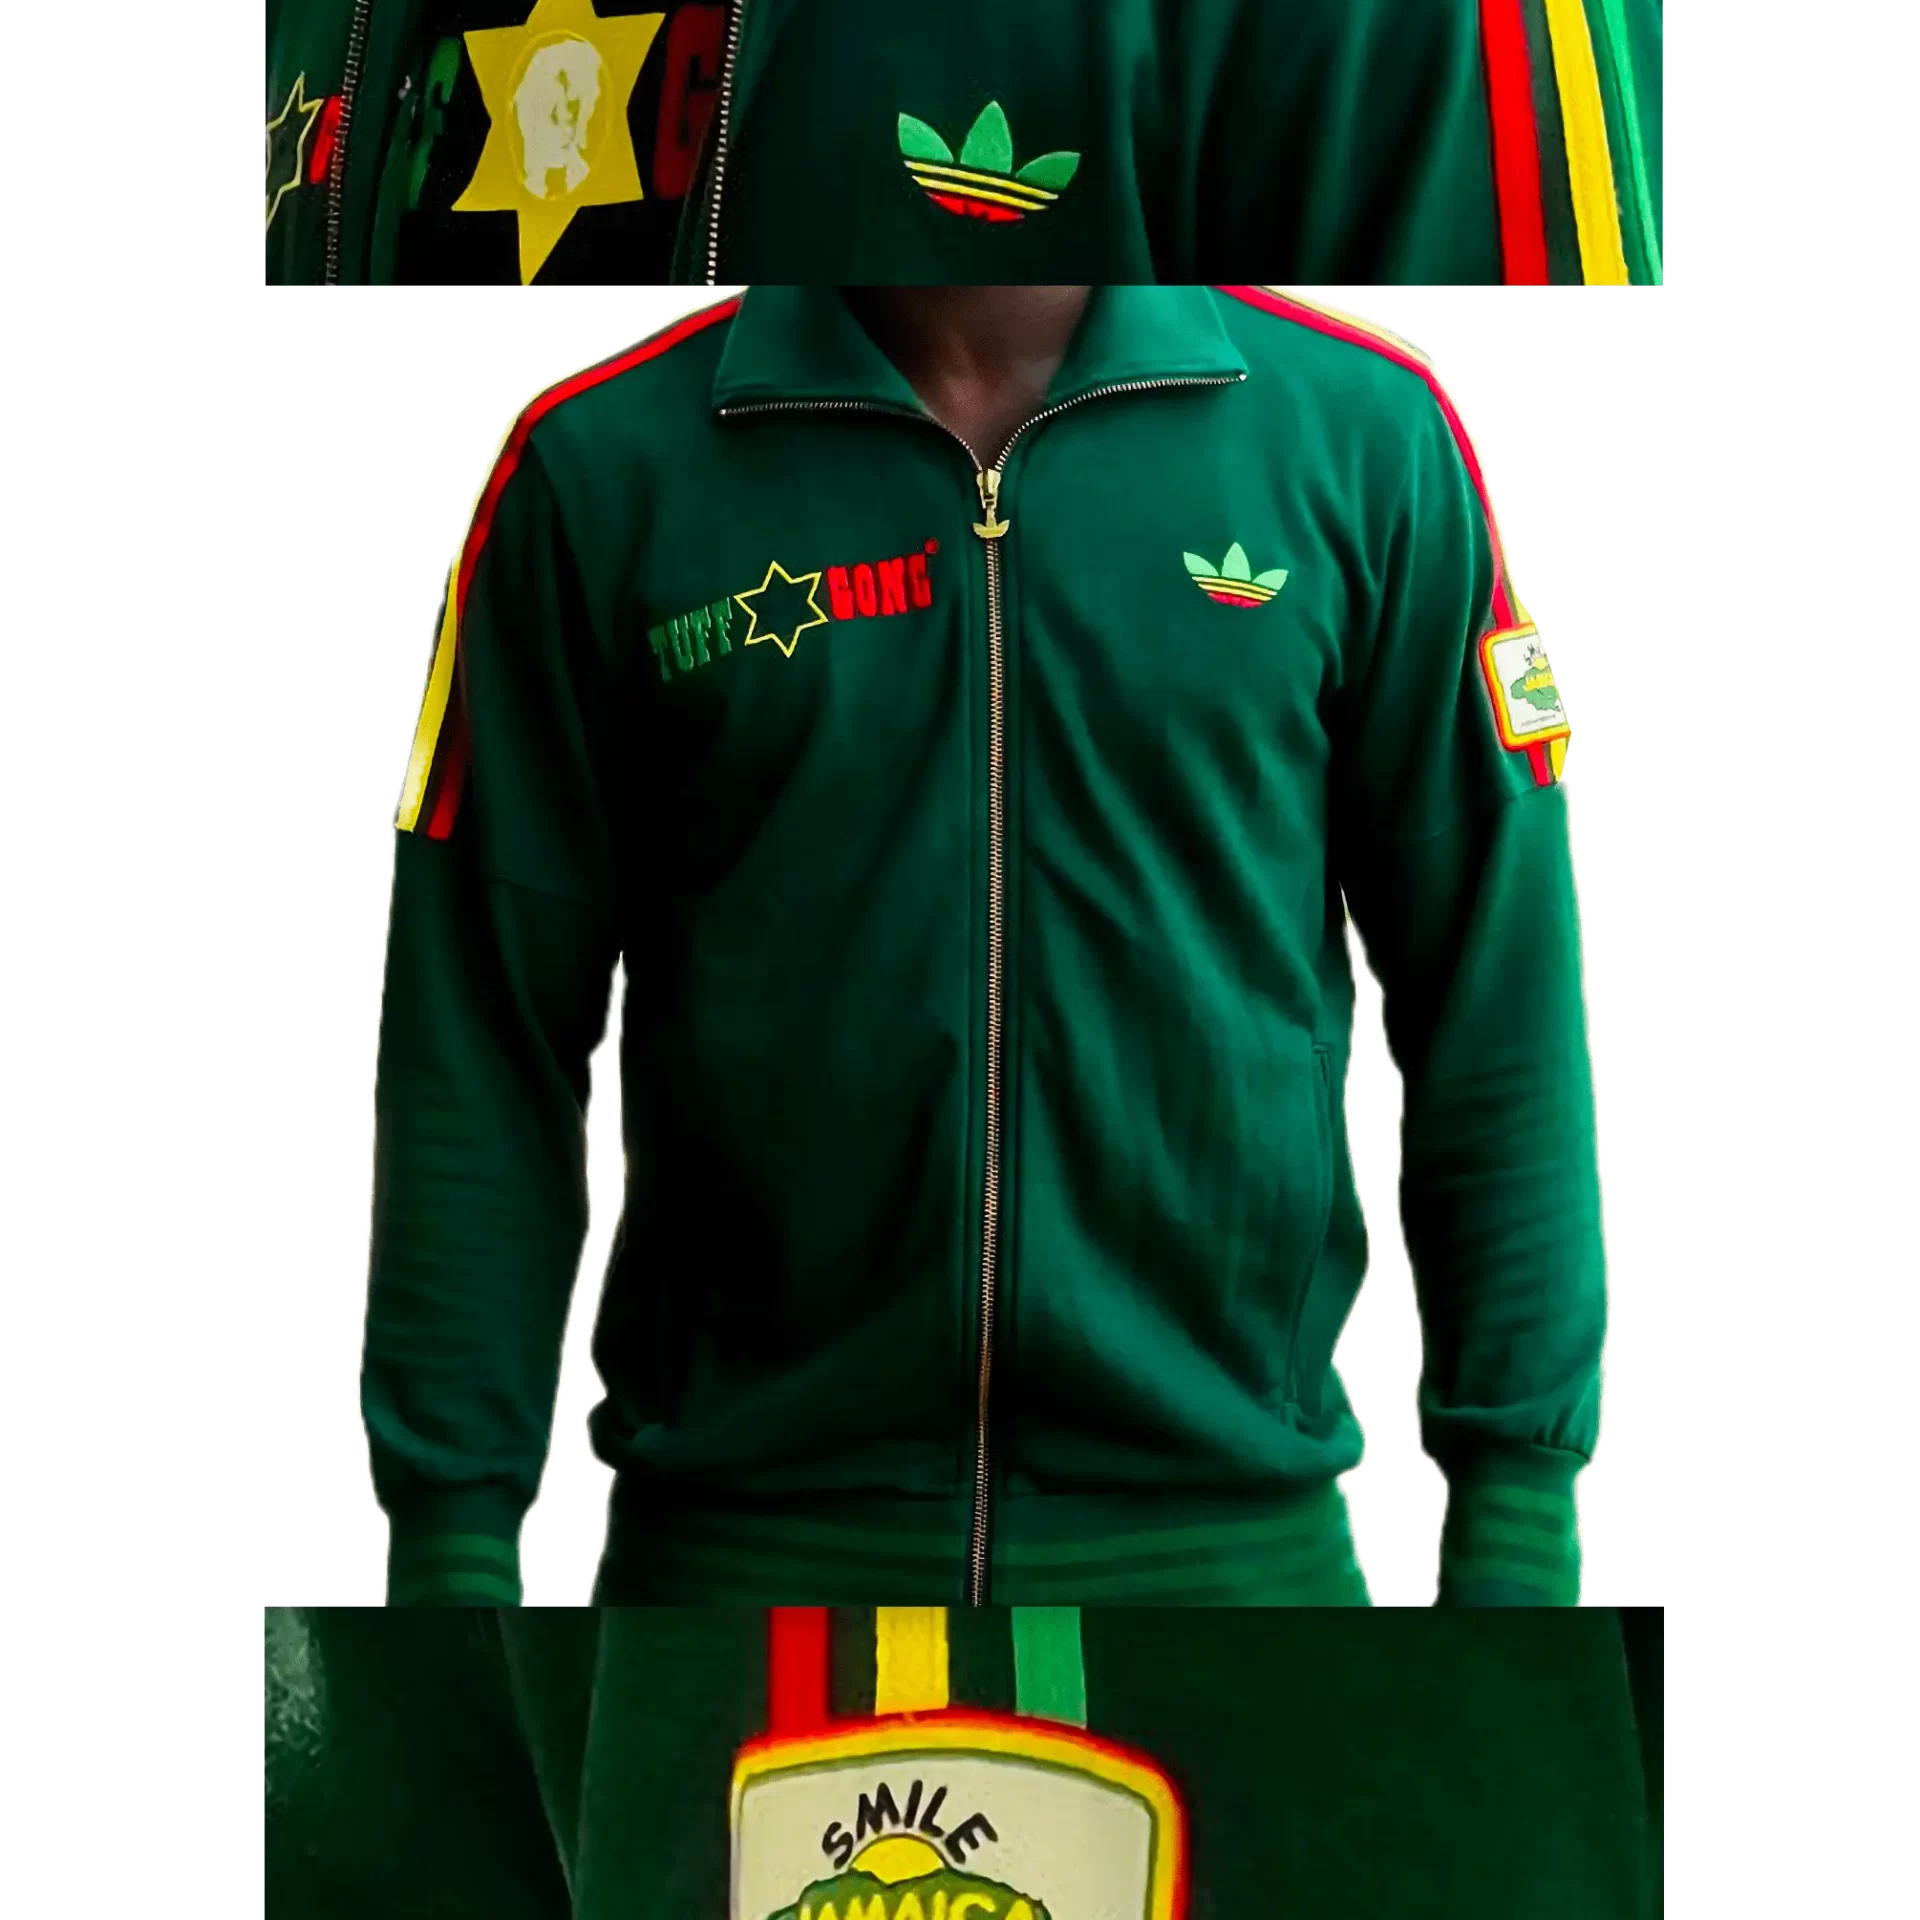 Men's 2007 Bob Marley Tuff Gong TT by Adidas: Skyrocket (EnLawded.com file #lmchk82526ip2y125210kg9st)